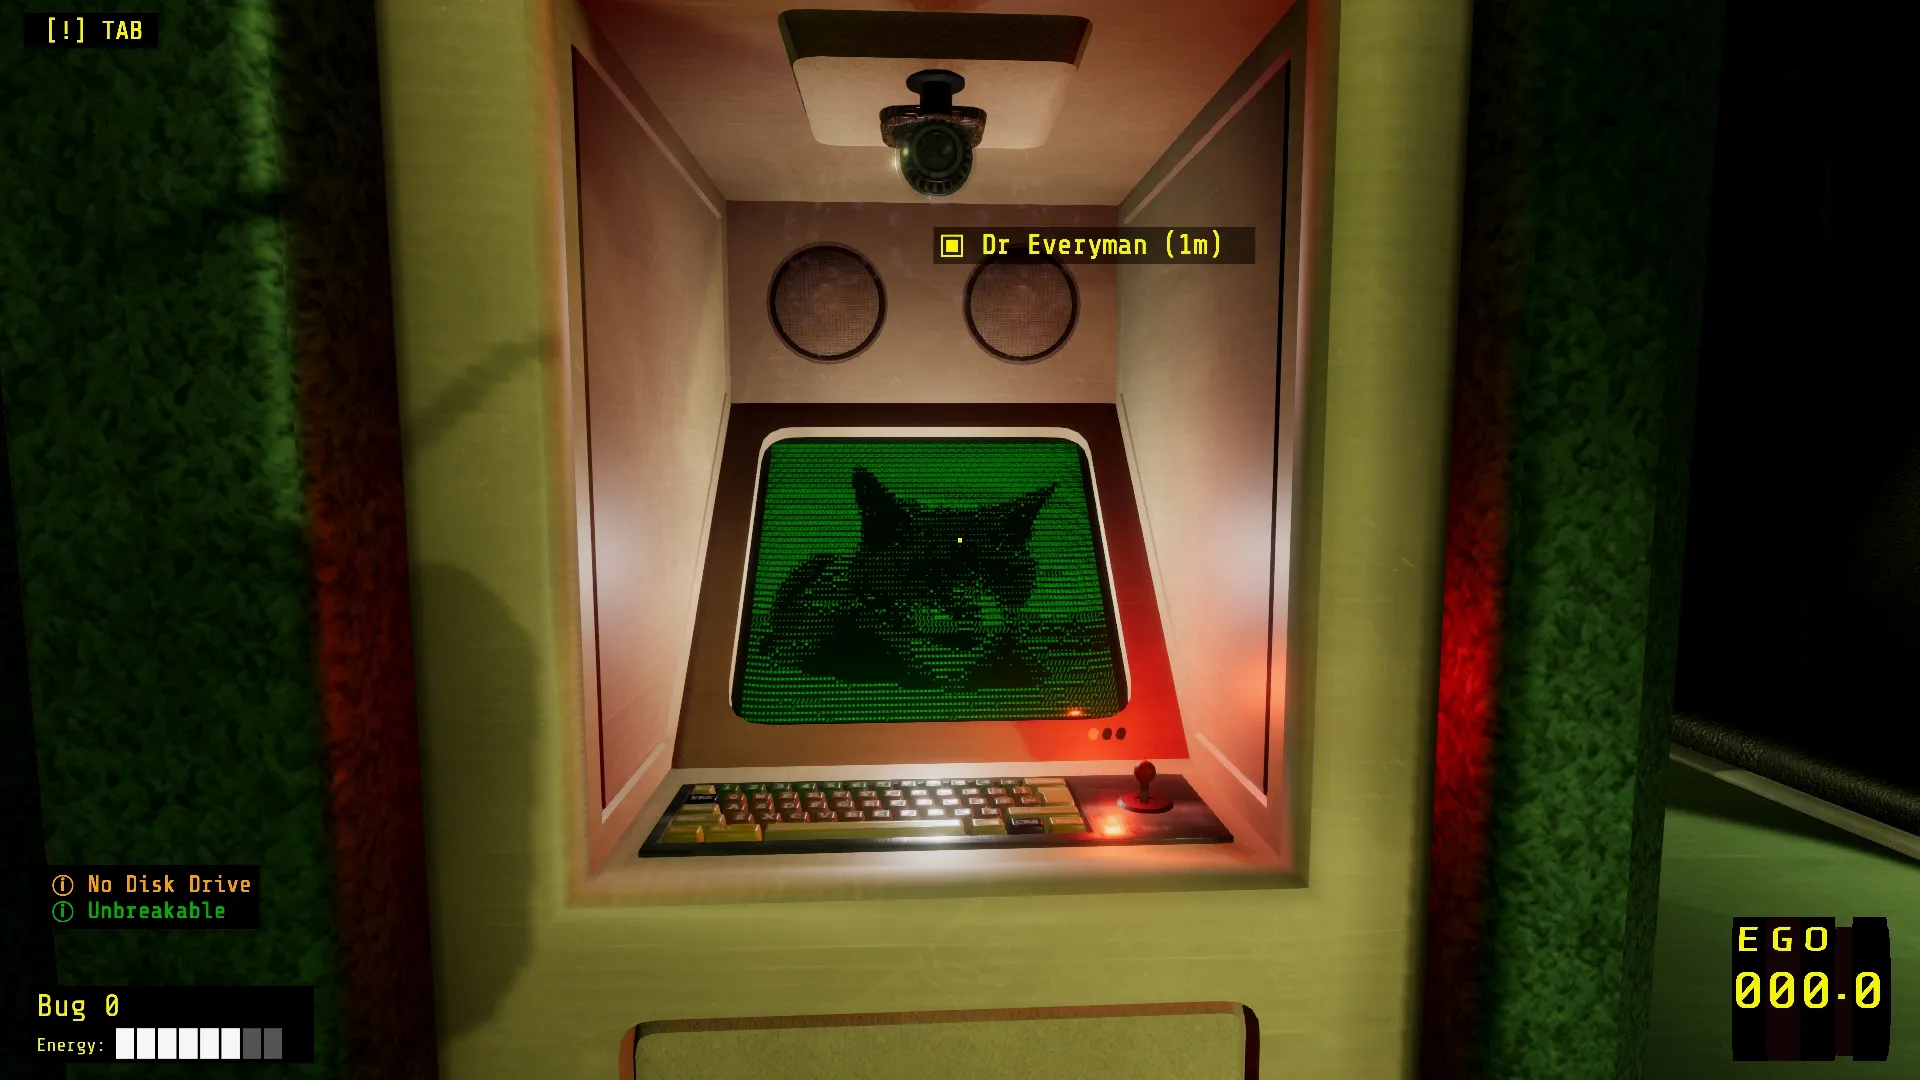 玩家获取指引的终端图标也是猫，因为转换控制终端（Ctrl Alt Terminal）的缩写是CAT